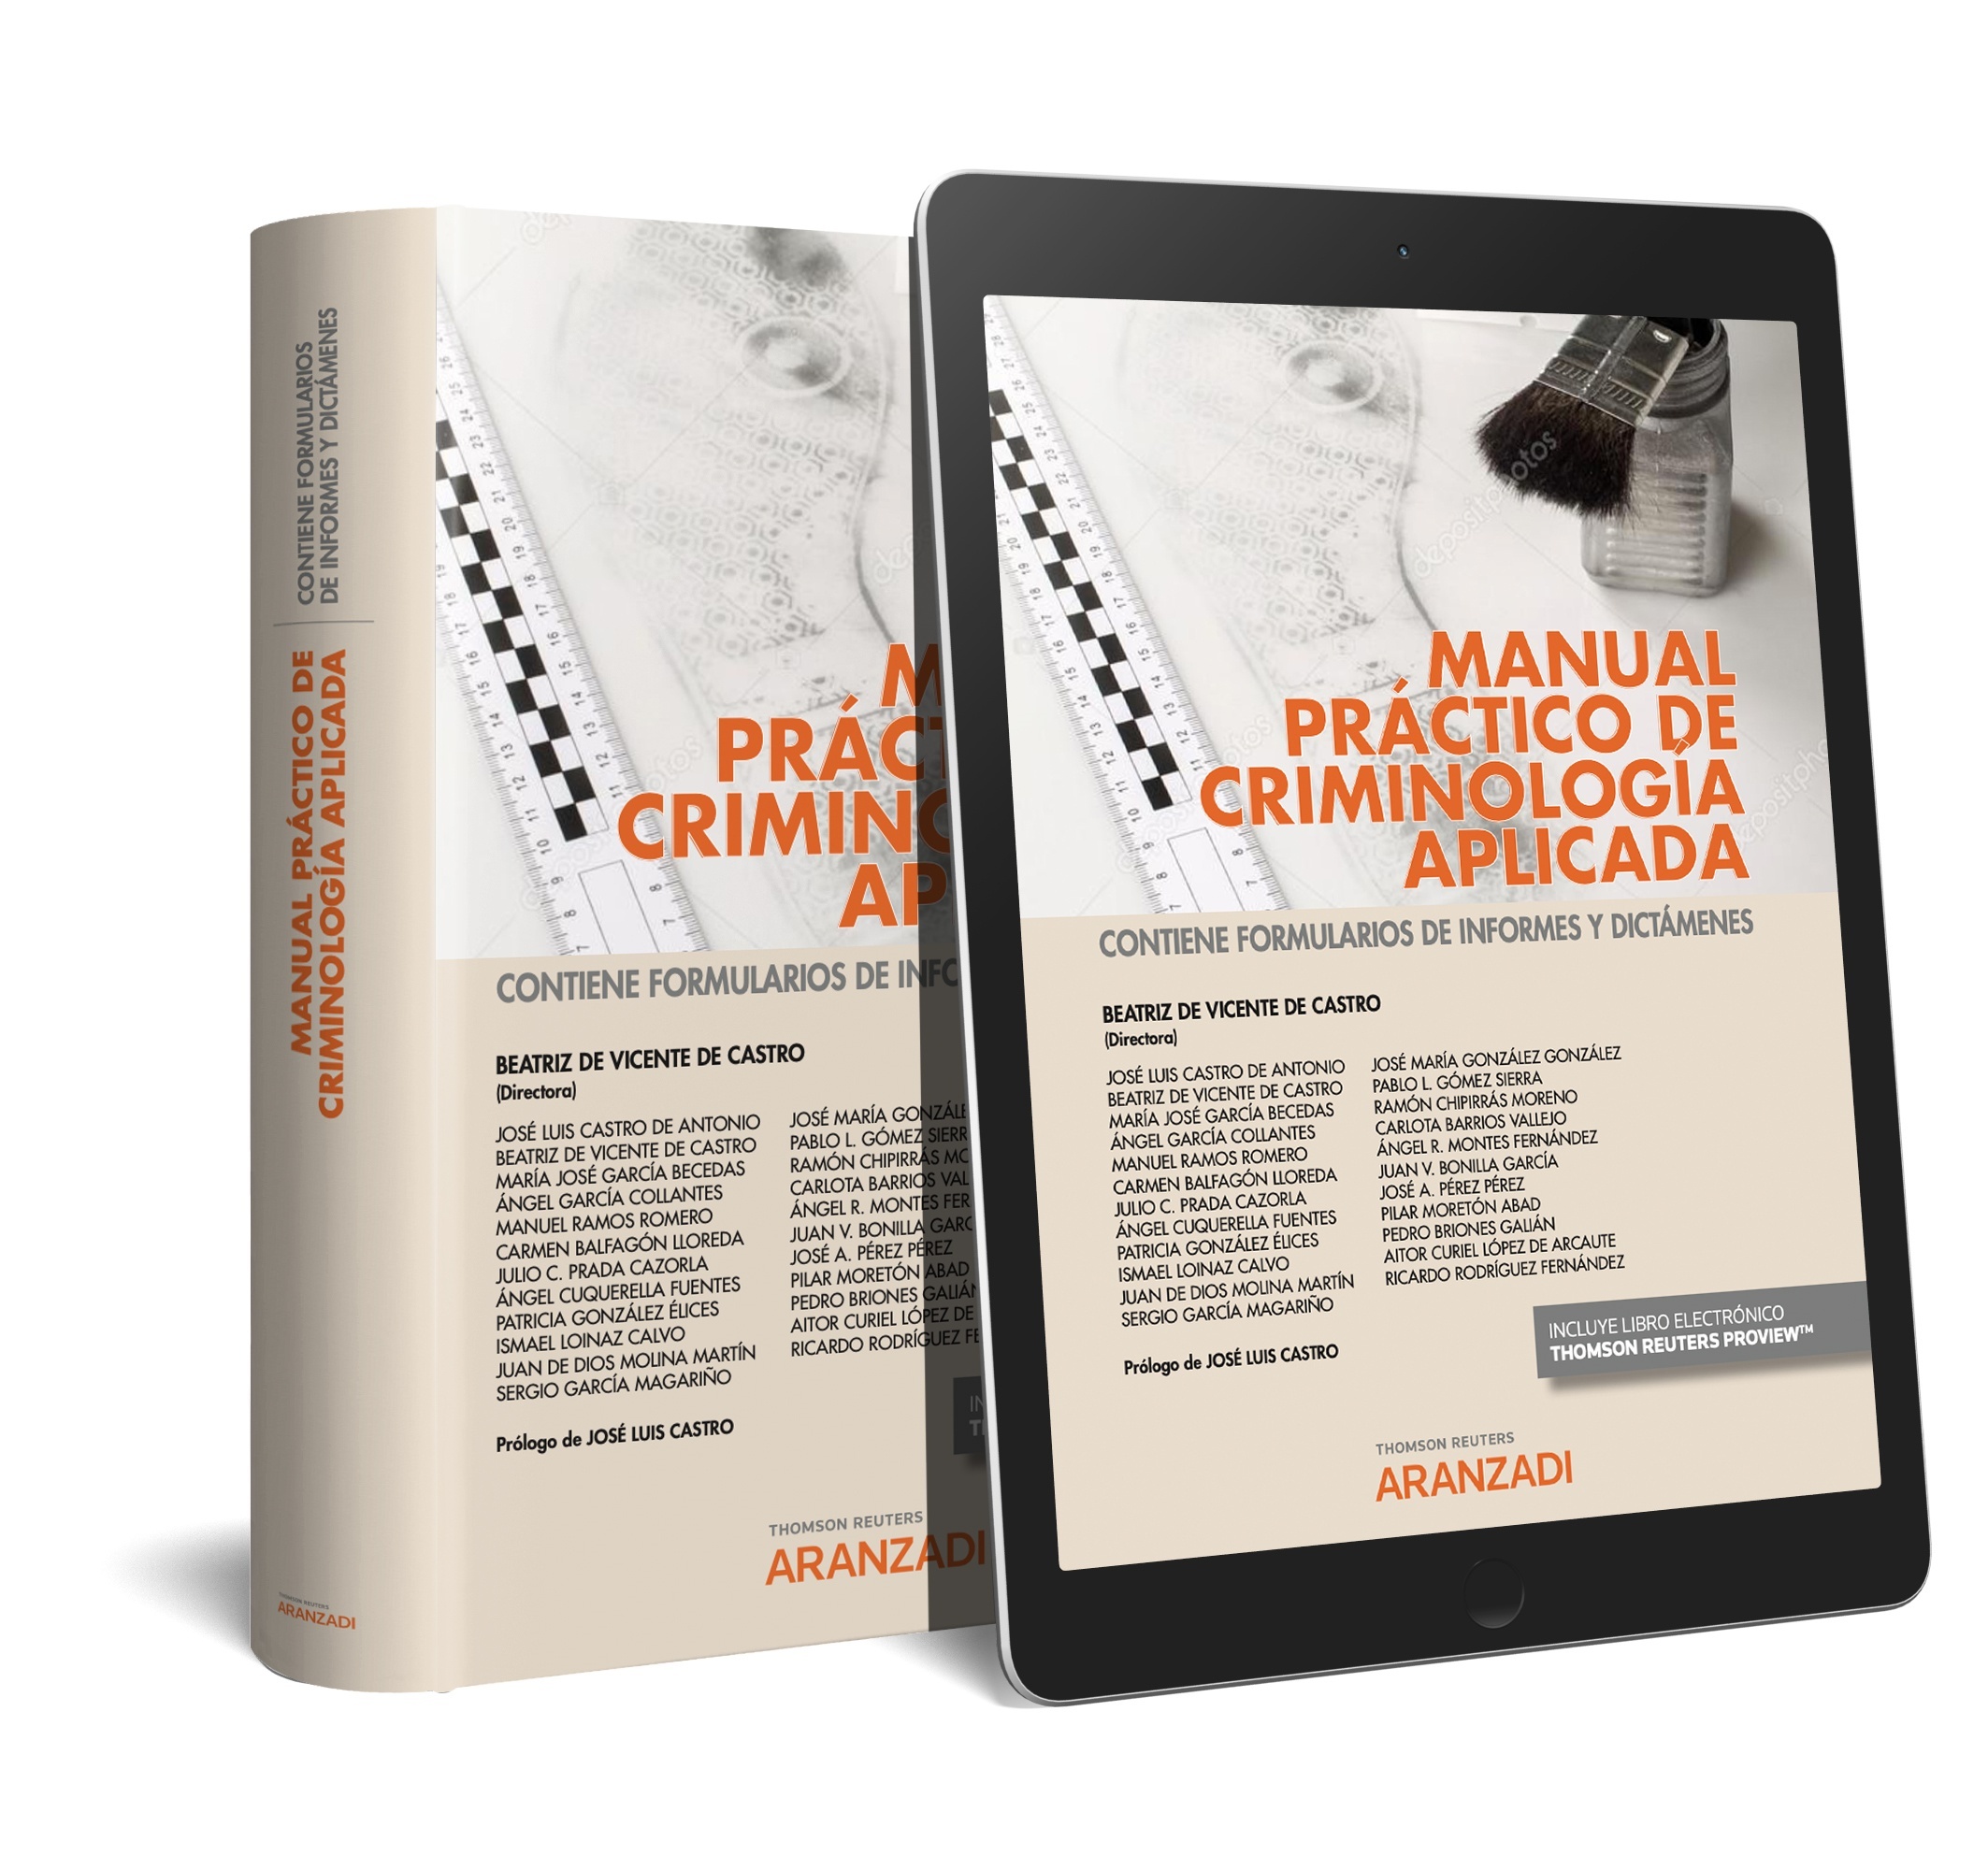 Manual práctico de criminología aplicada